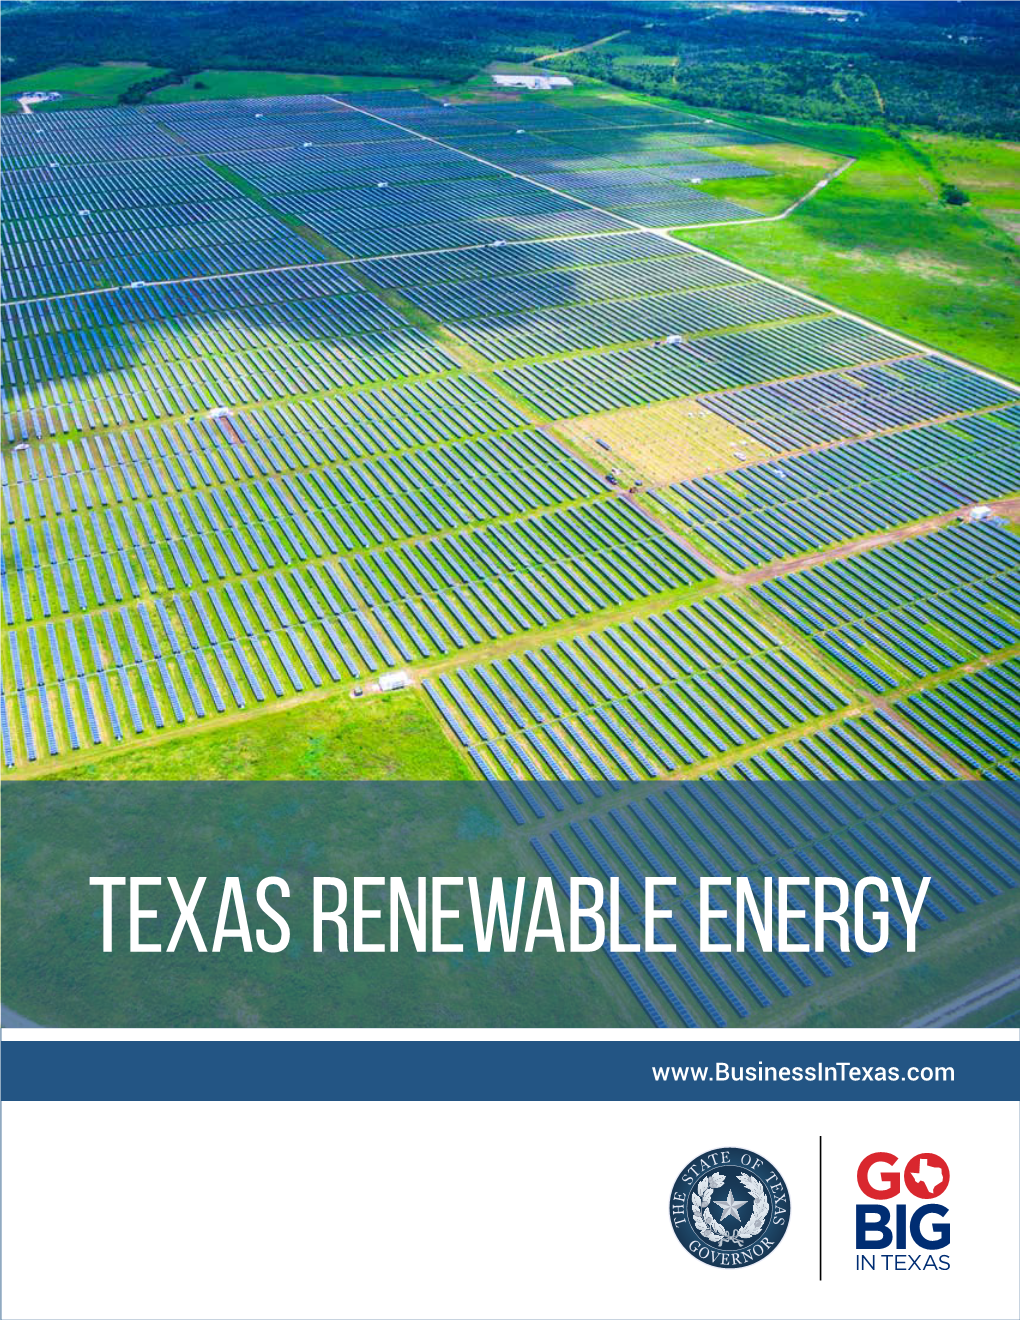 The Texas Renewable Energy Industry